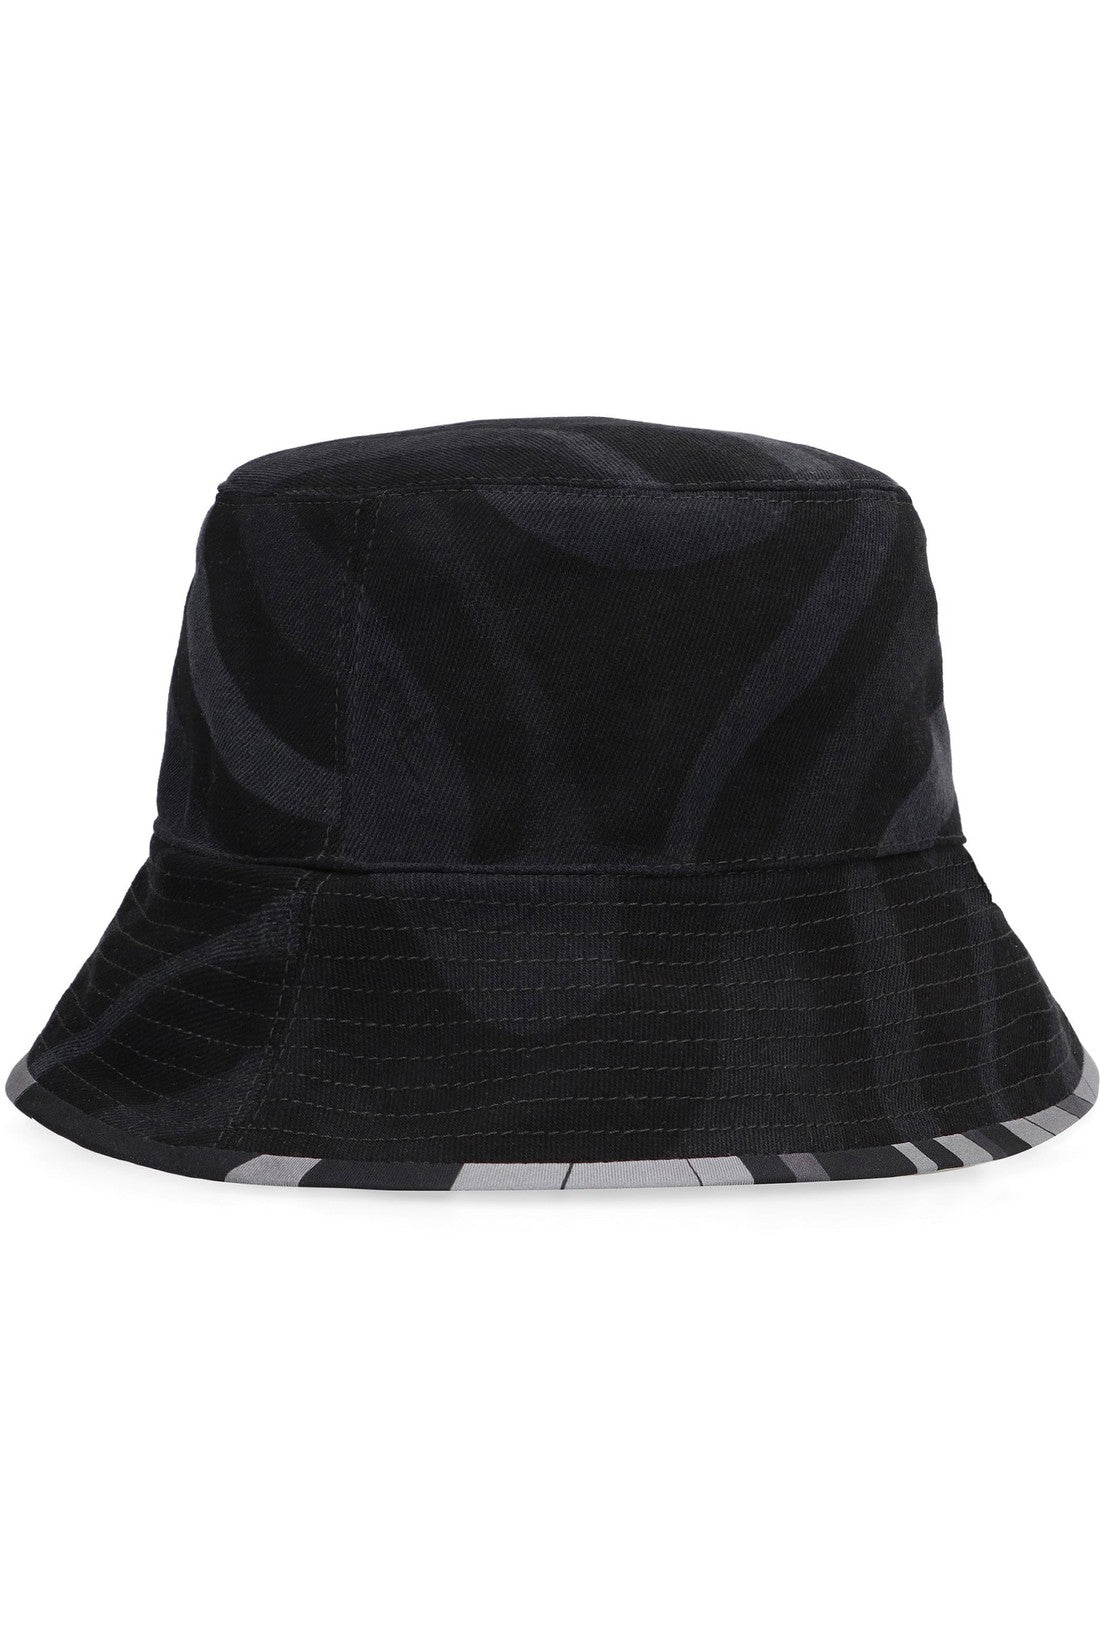 PUCCI-OUTLET-SALE-Bucket hat-ARCHIVIST